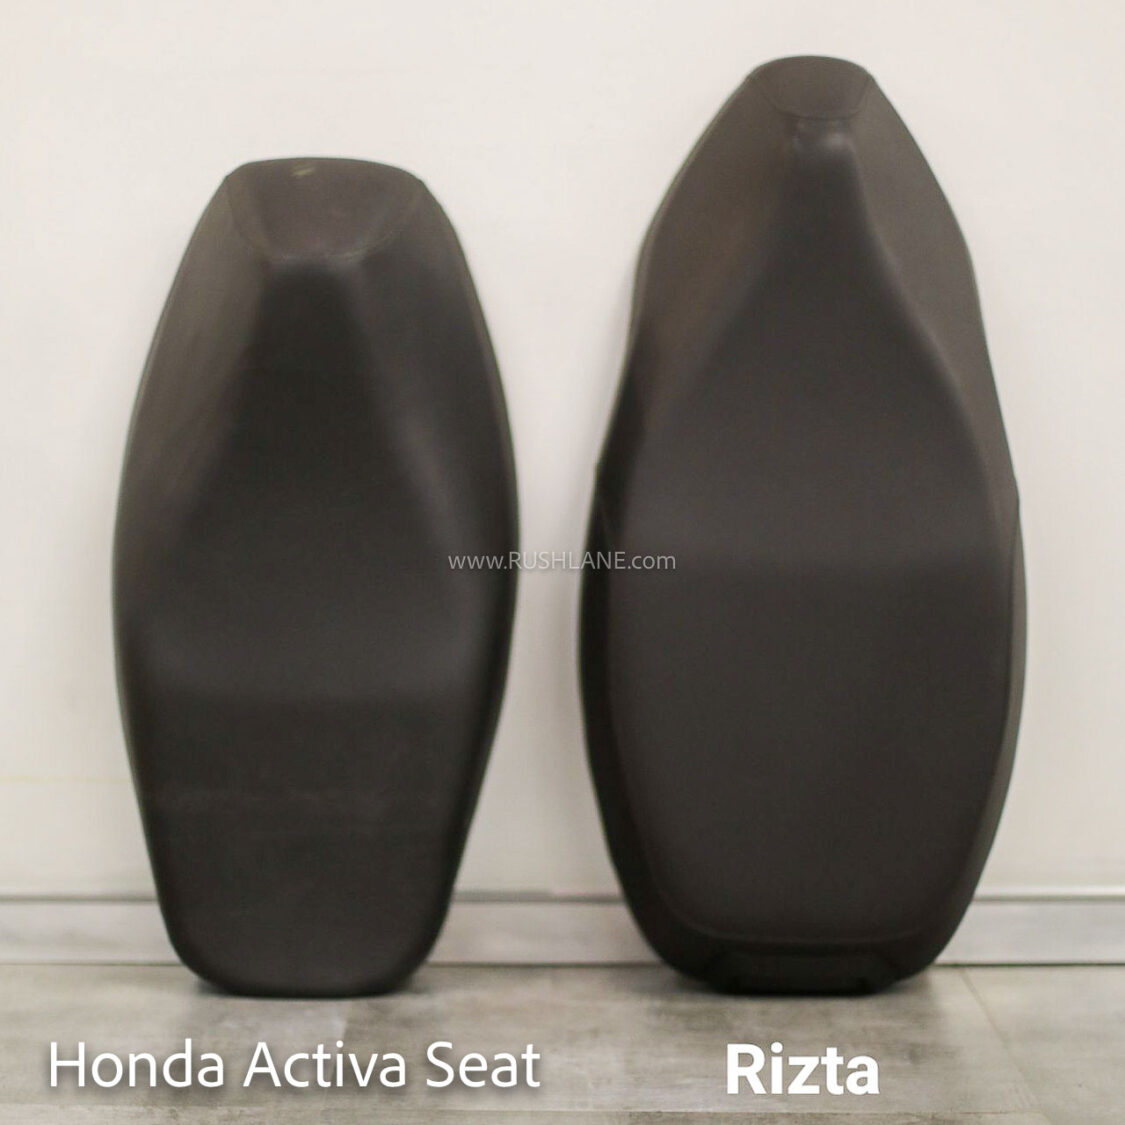 New Ather Rizta seat comparison - Vs Honda Activa